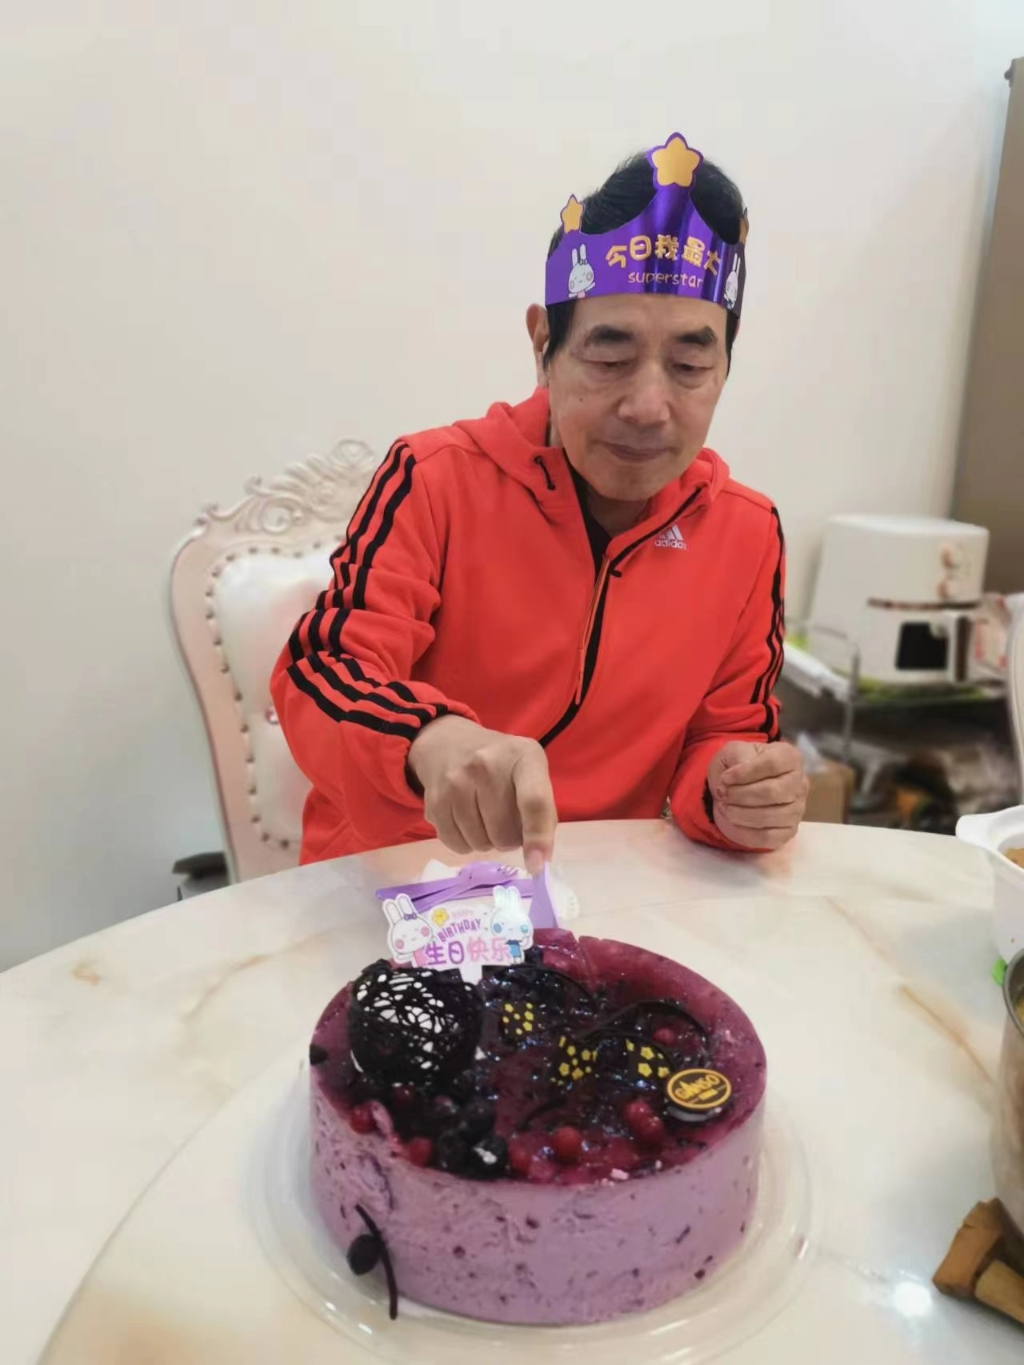 05 11月27日是陈艳秋父亲的74岁生日。受访者供图